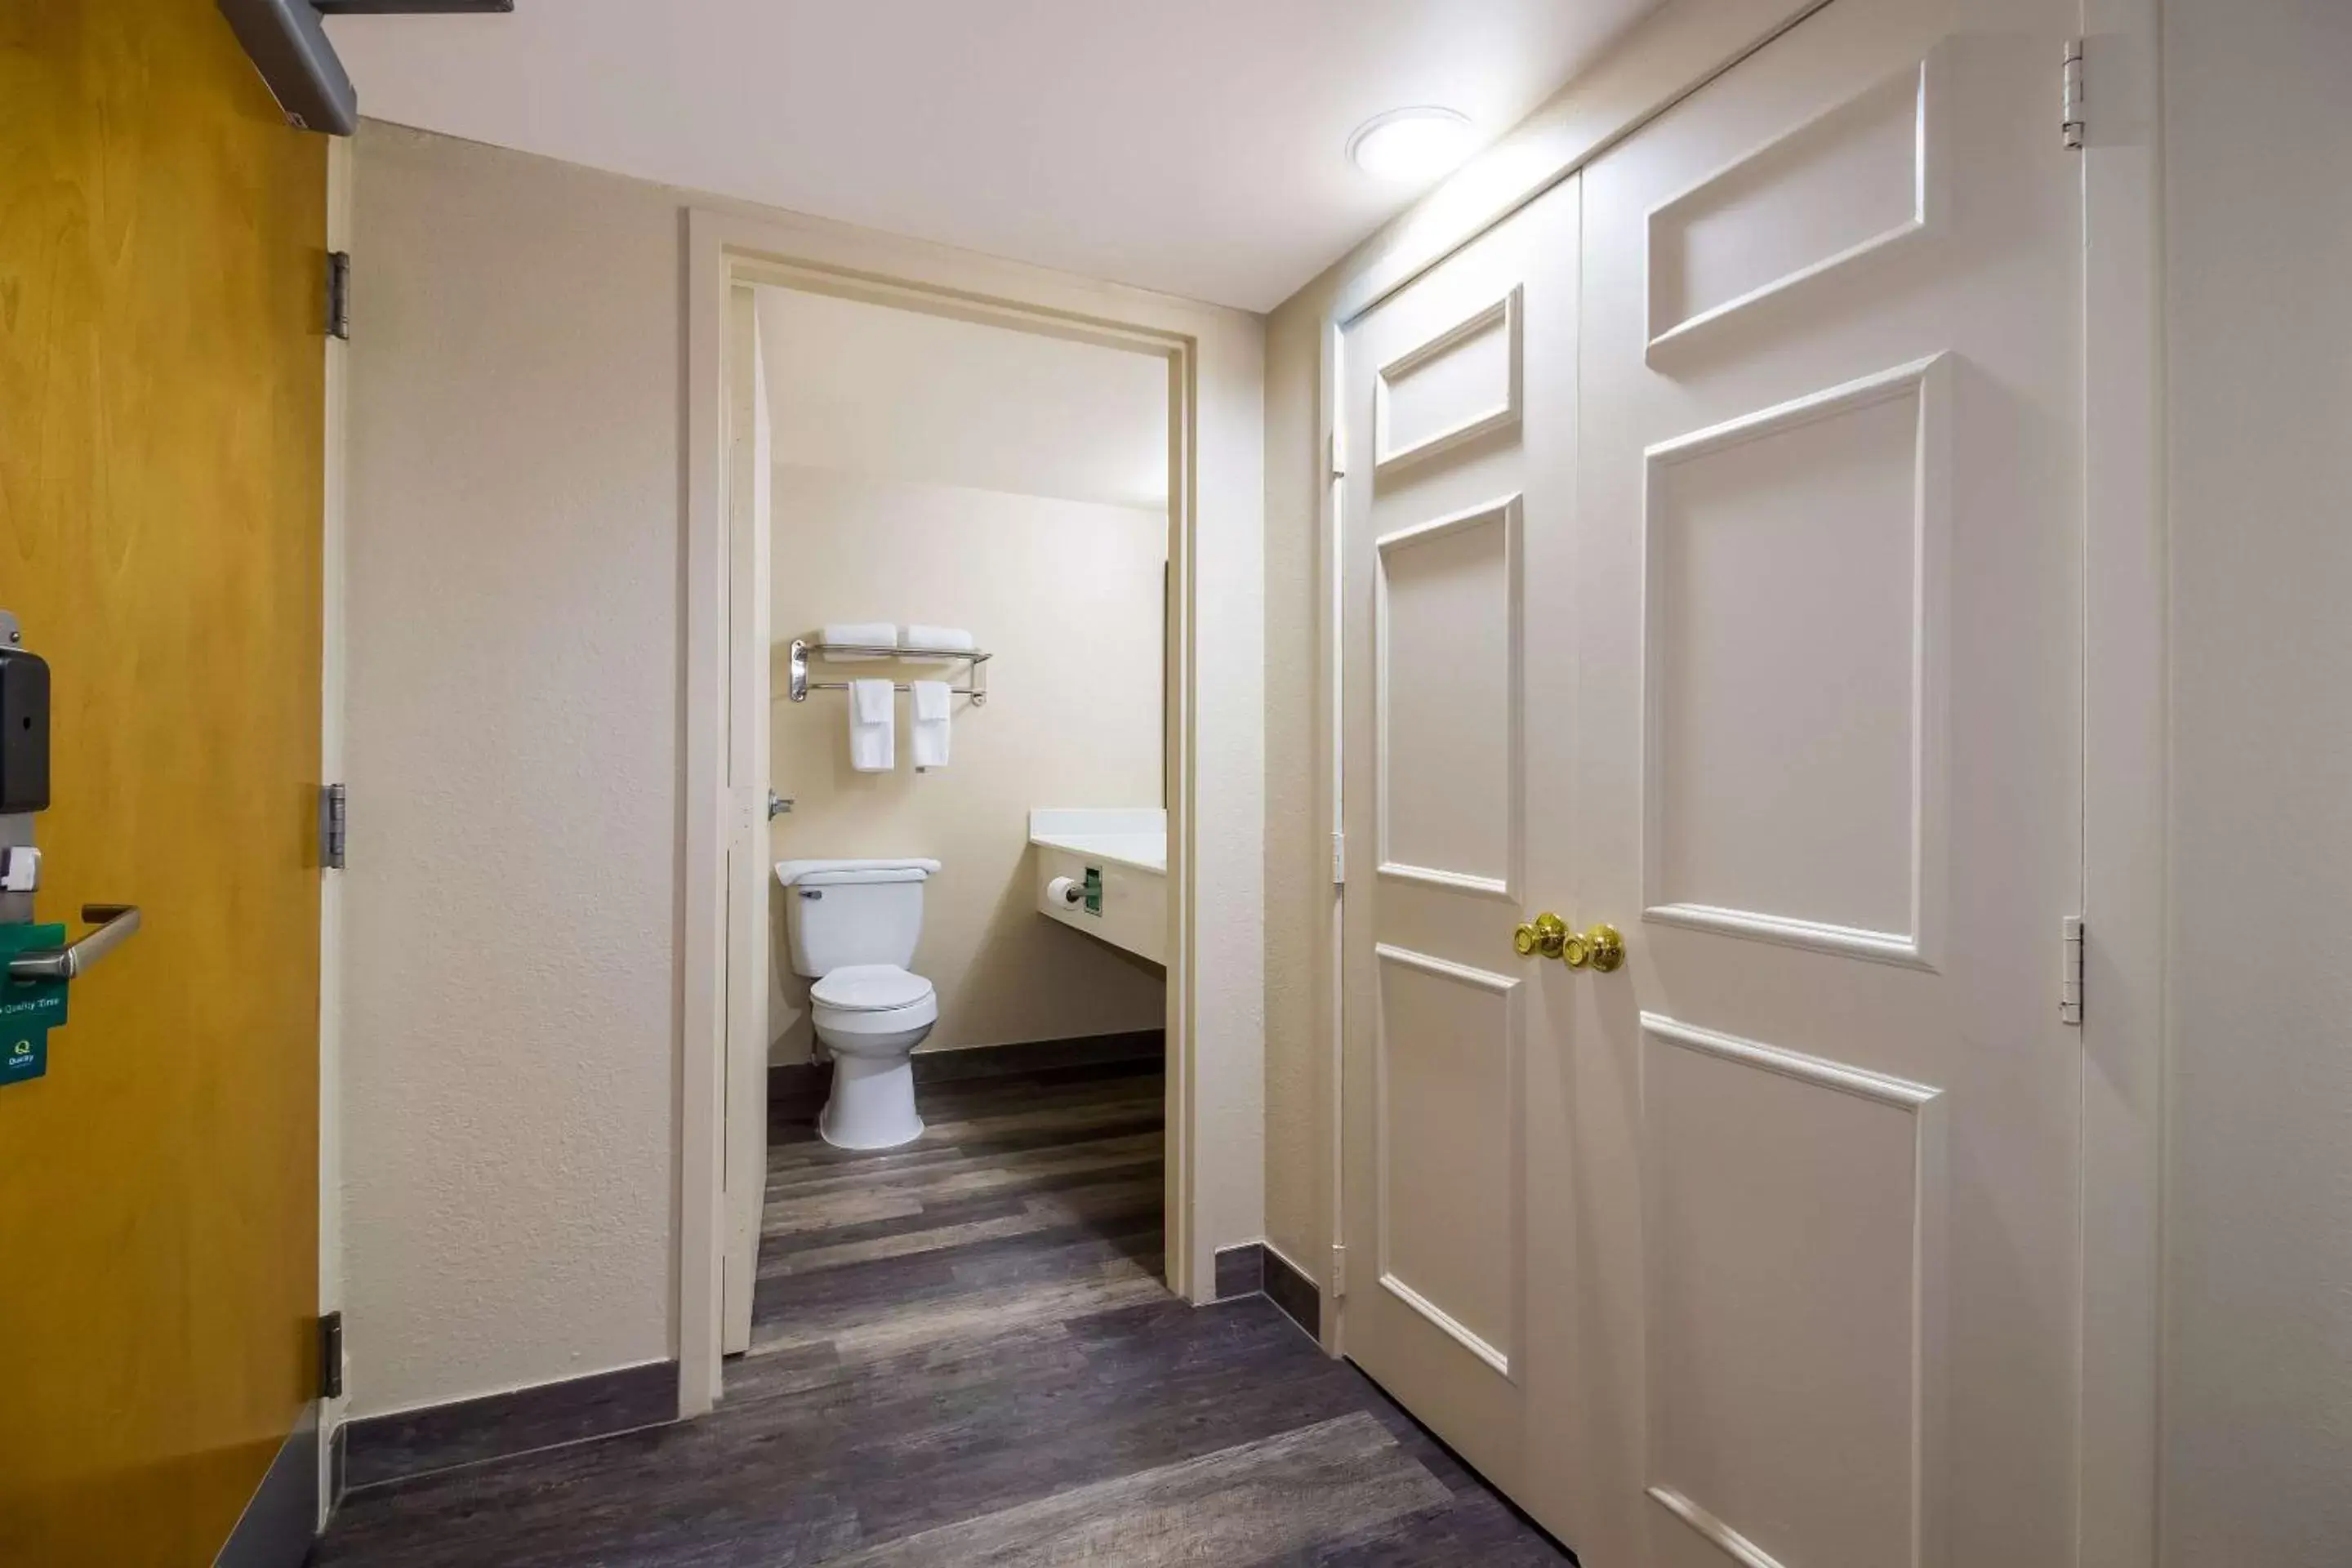 Bedroom, Bathroom in Quality Inn & Suites North Myrtle Beach